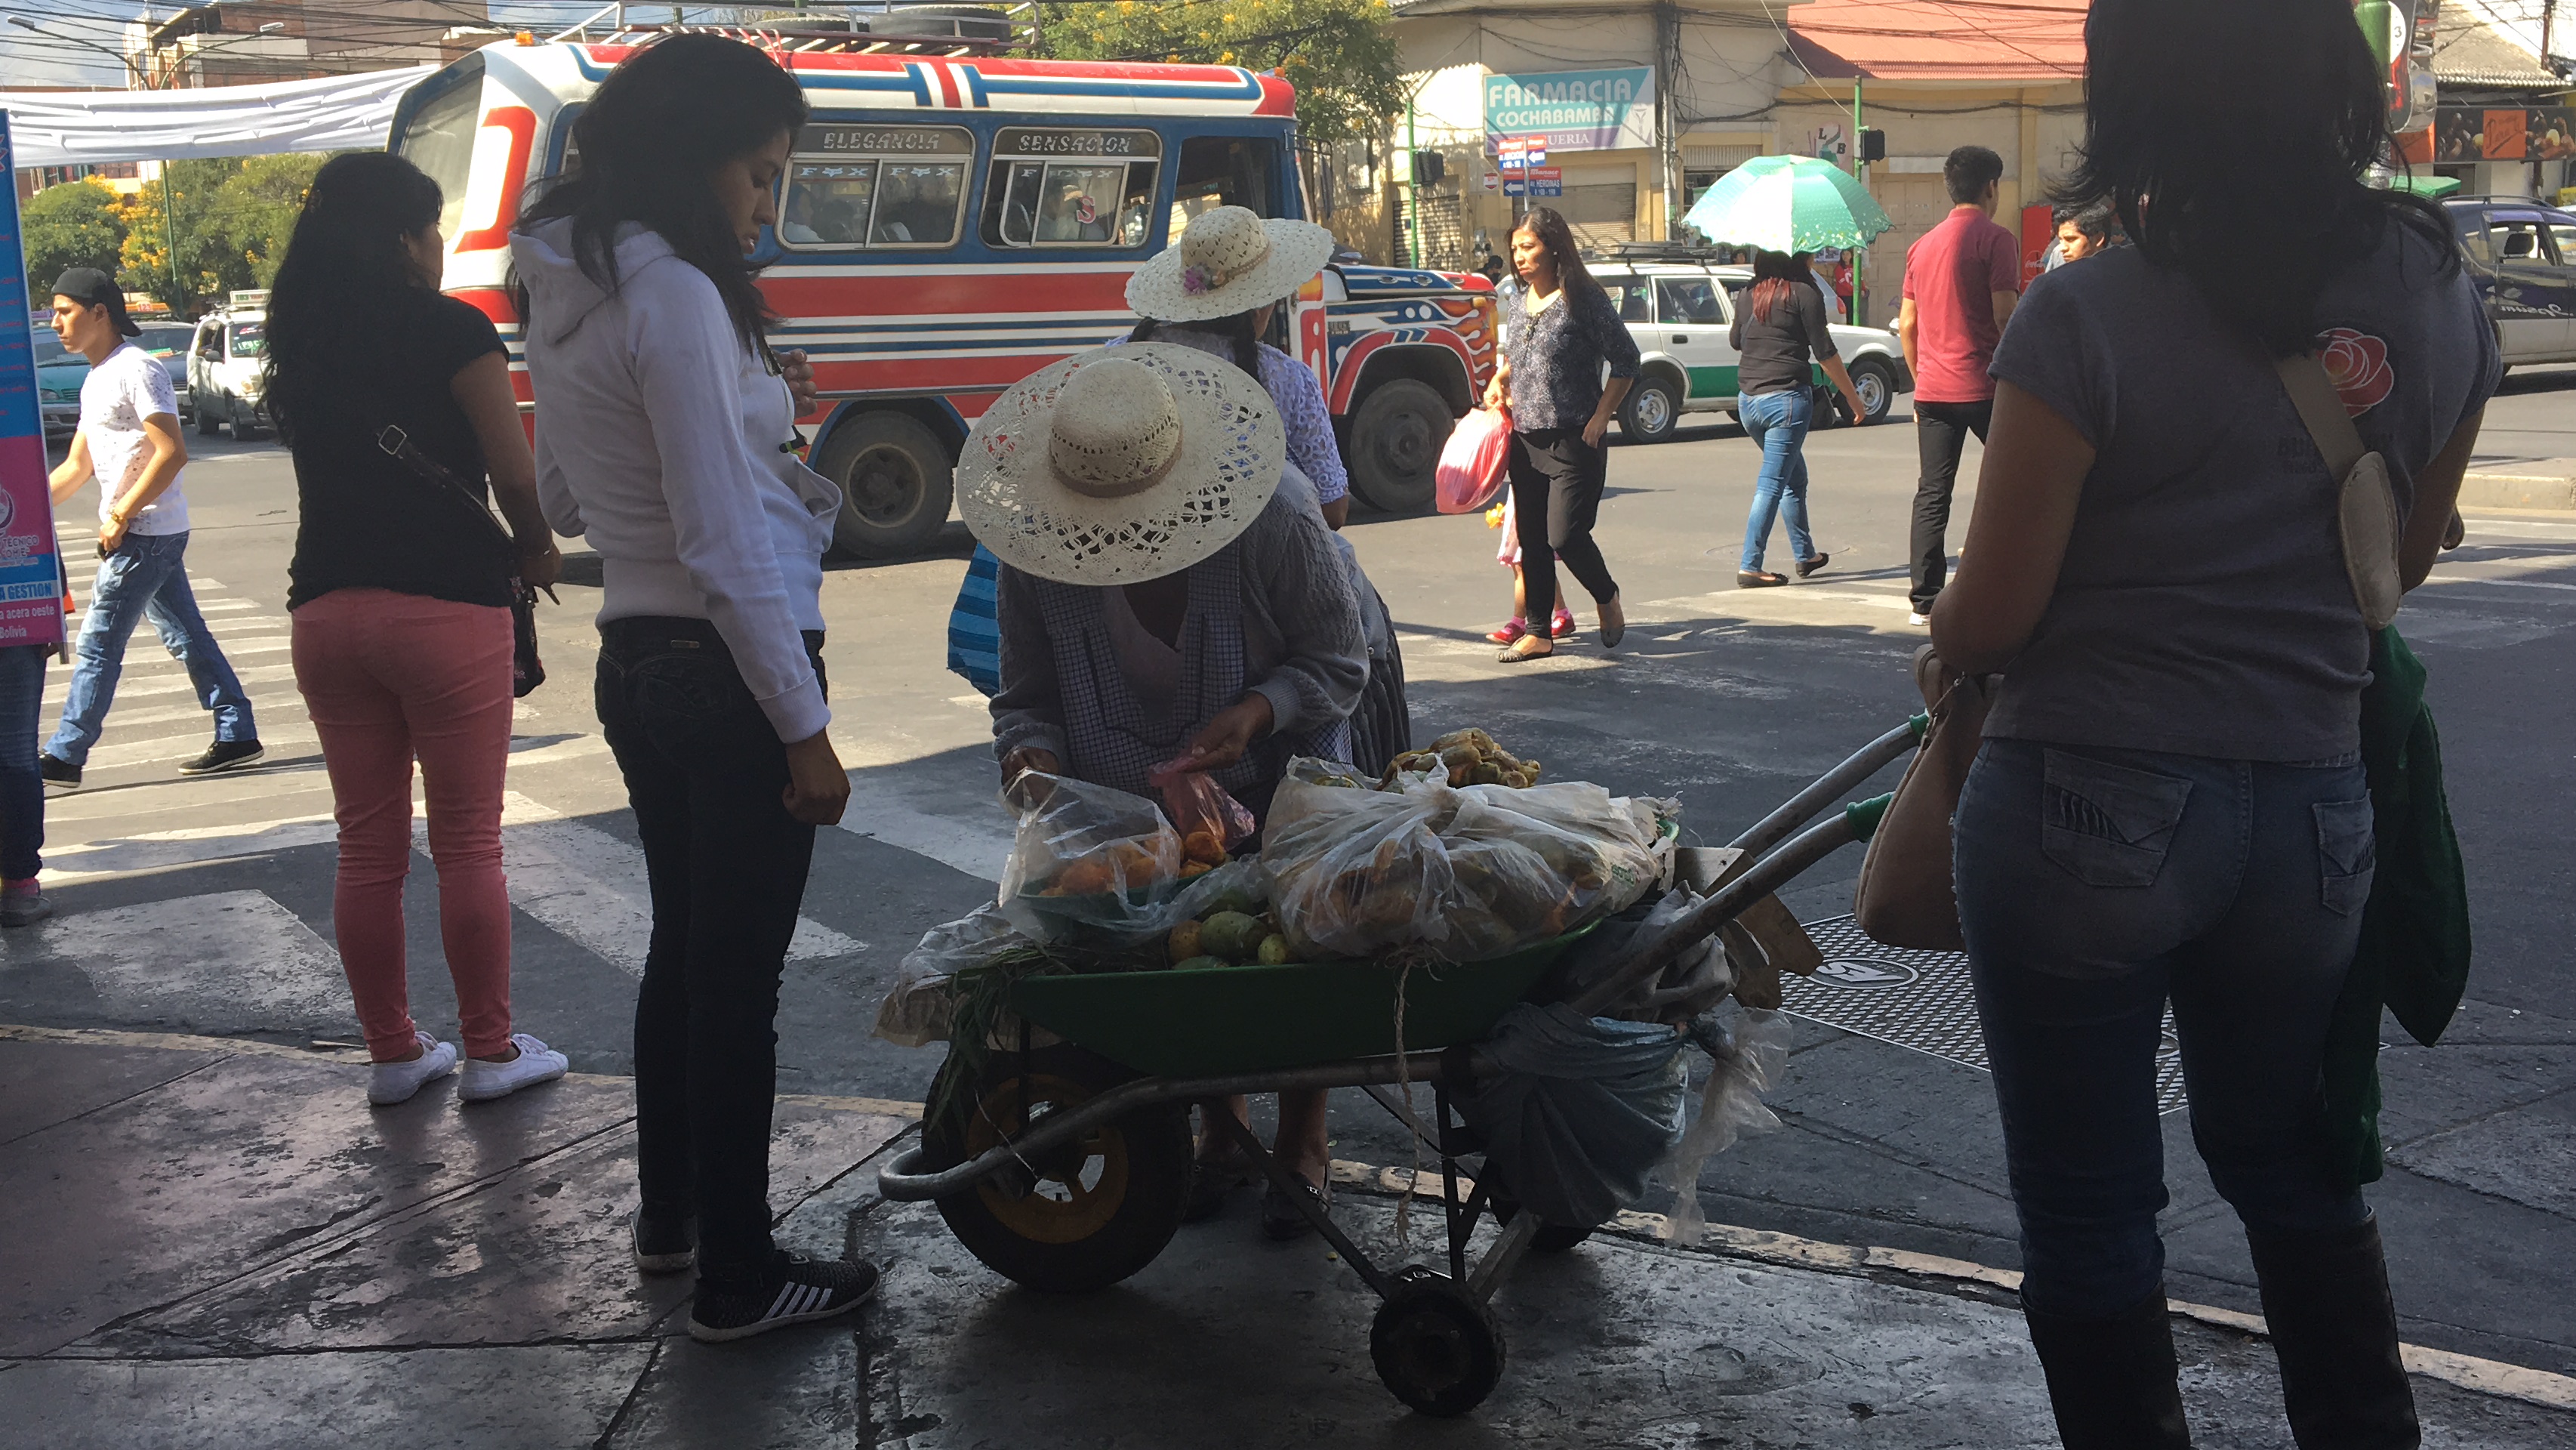 Vender en las calles, el día a día en Cochabamba - Los Tiempos